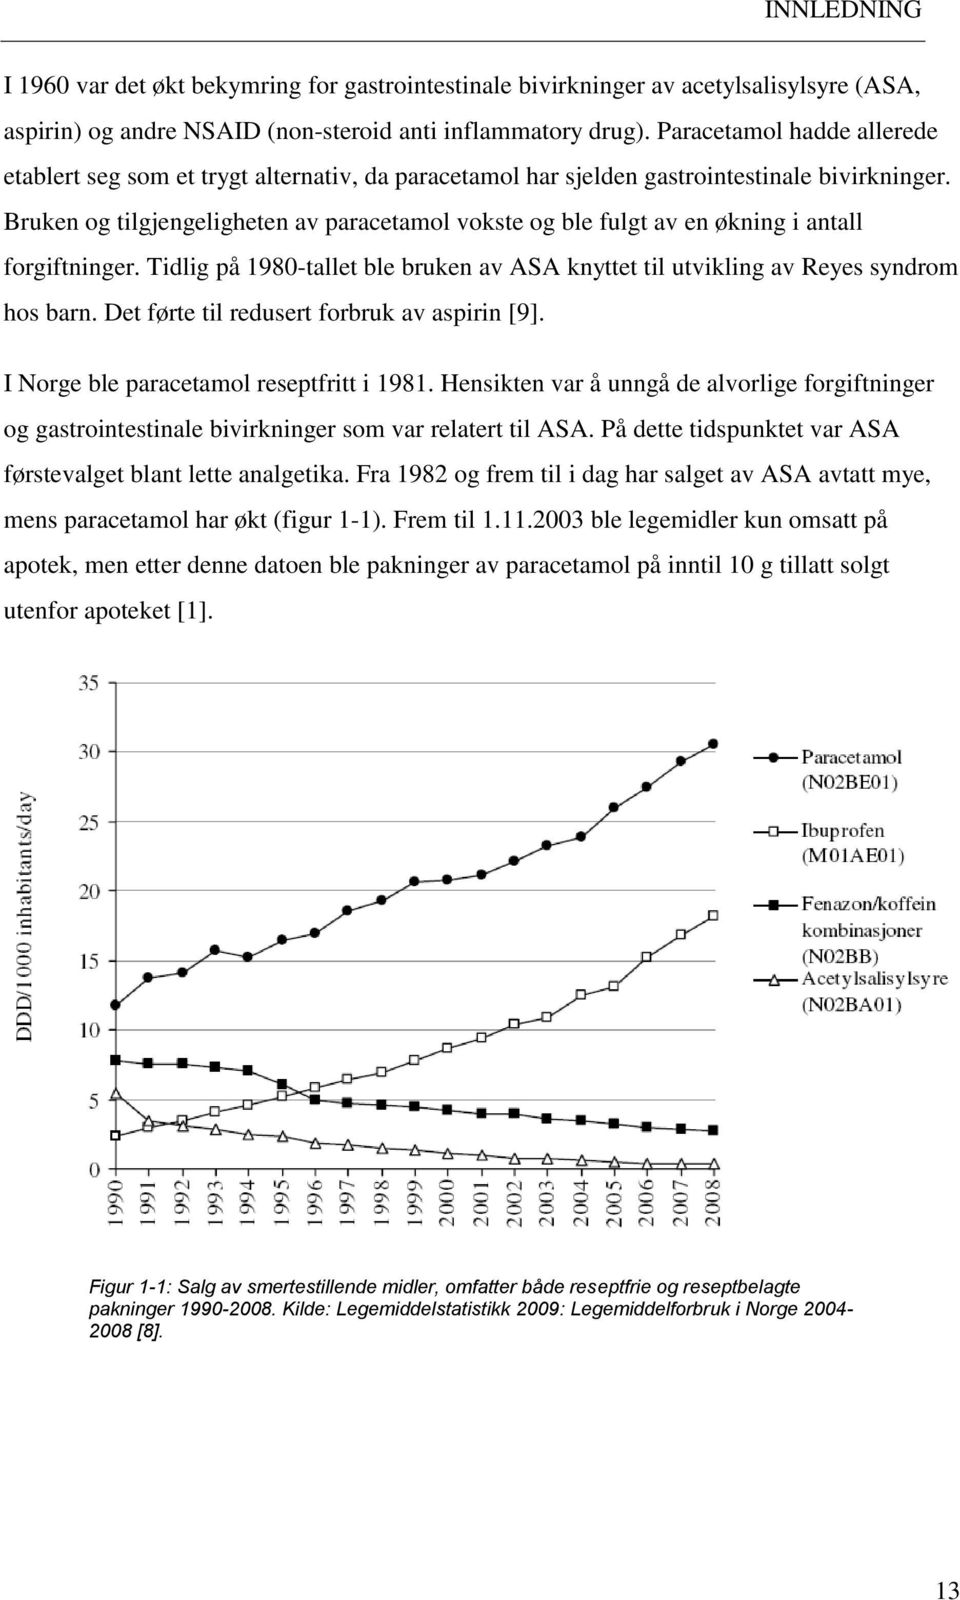 Bruken og tilgjengeligheten av paracetamol vokste og ble fulgt av en økning i antall forgiftninger. Tidlig på 1980-tallet ble bruken av ASA knyttet til utvikling av Reyes syndrom hos barn.